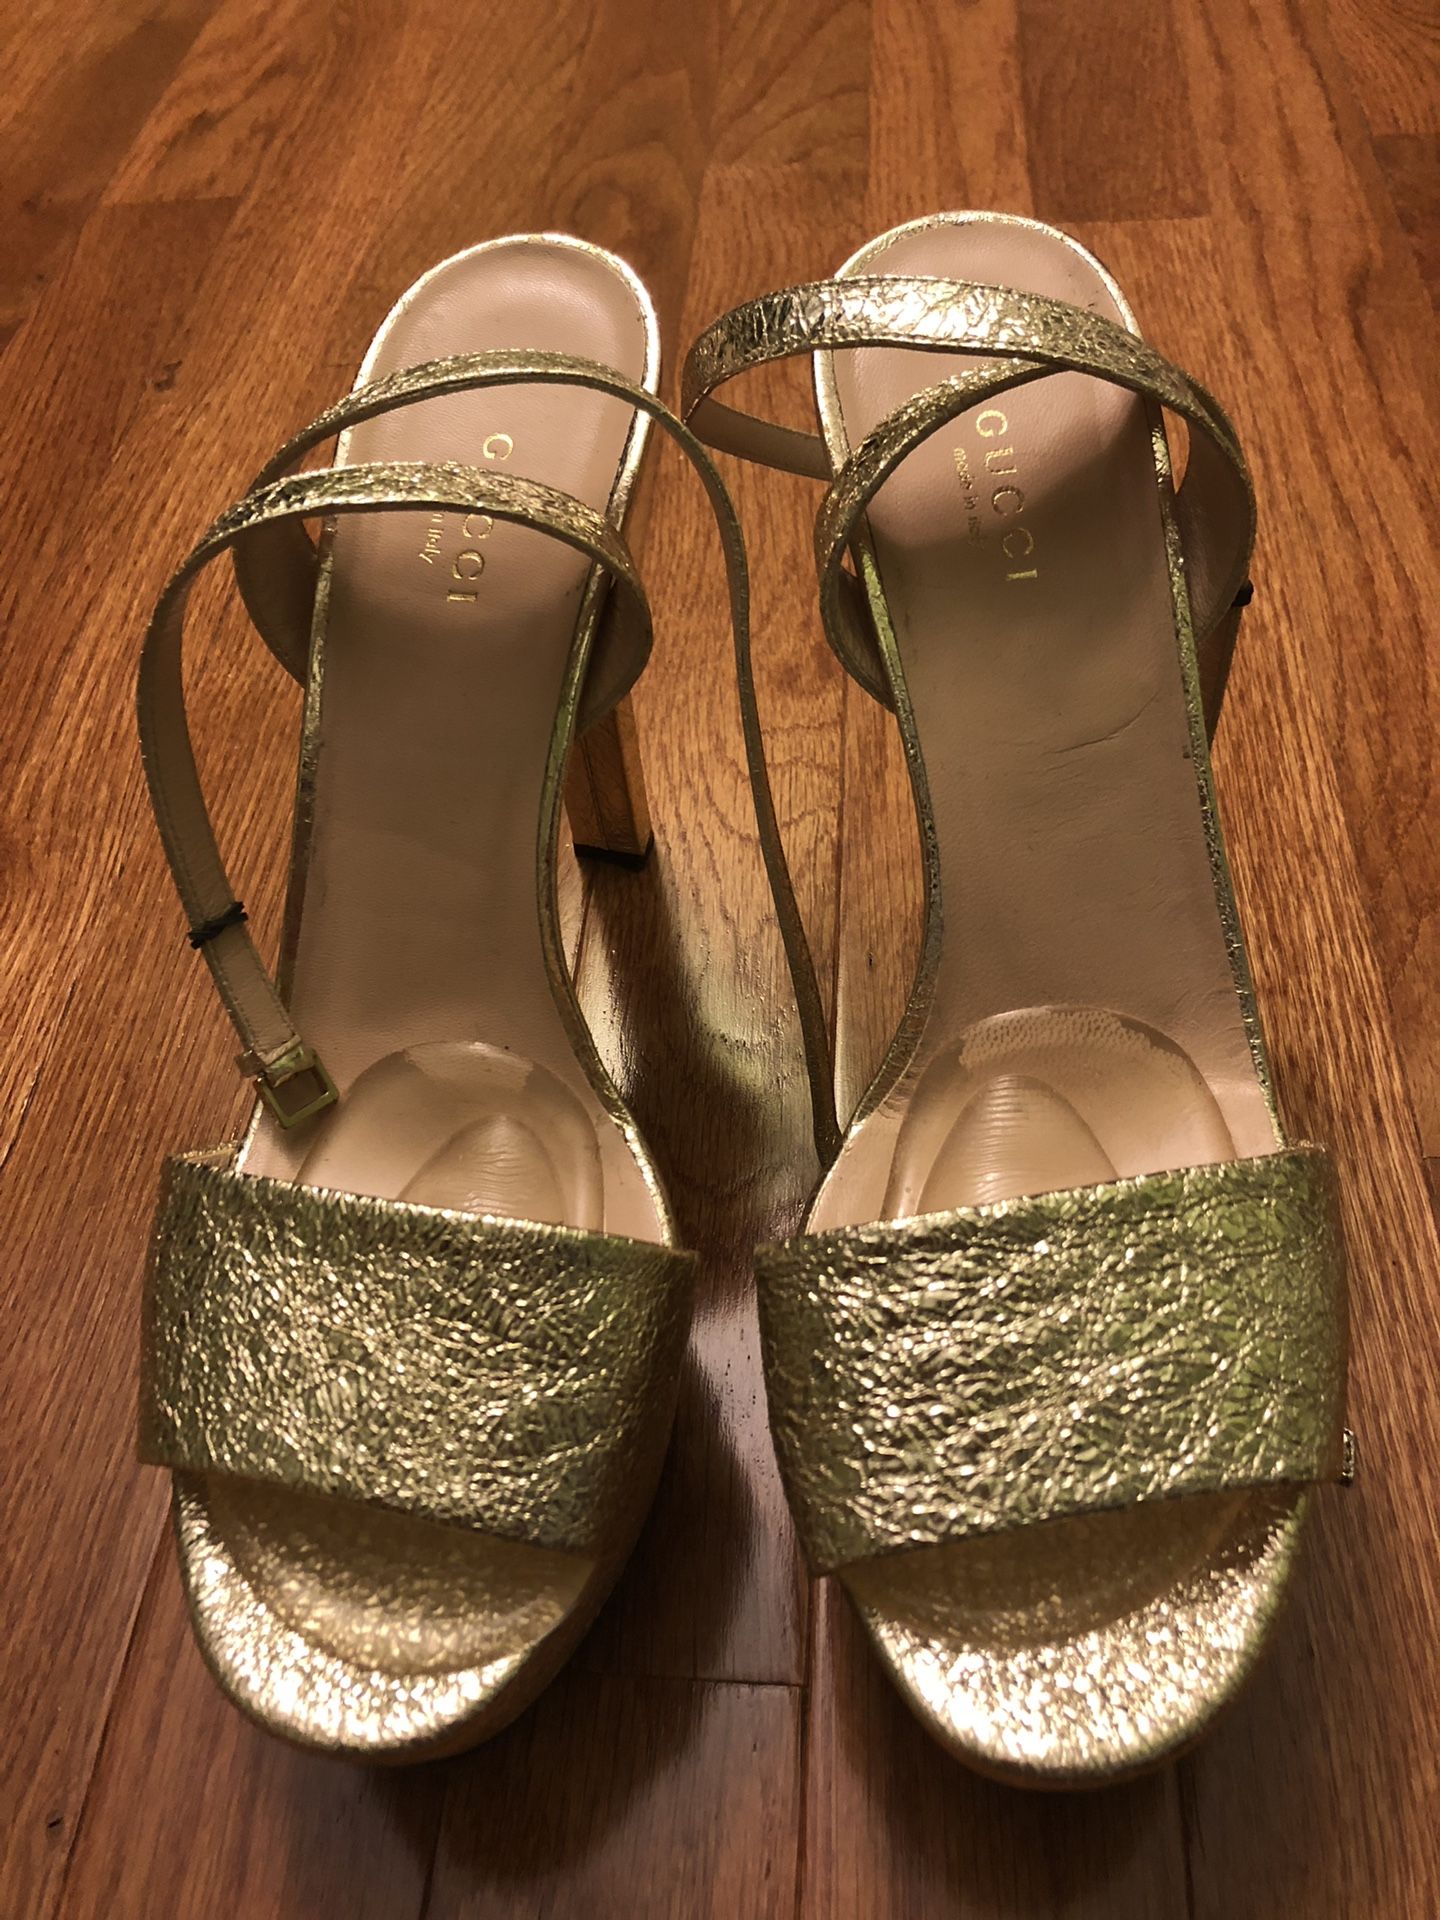 Gucci Women’s Heels - $120 - size 8.5